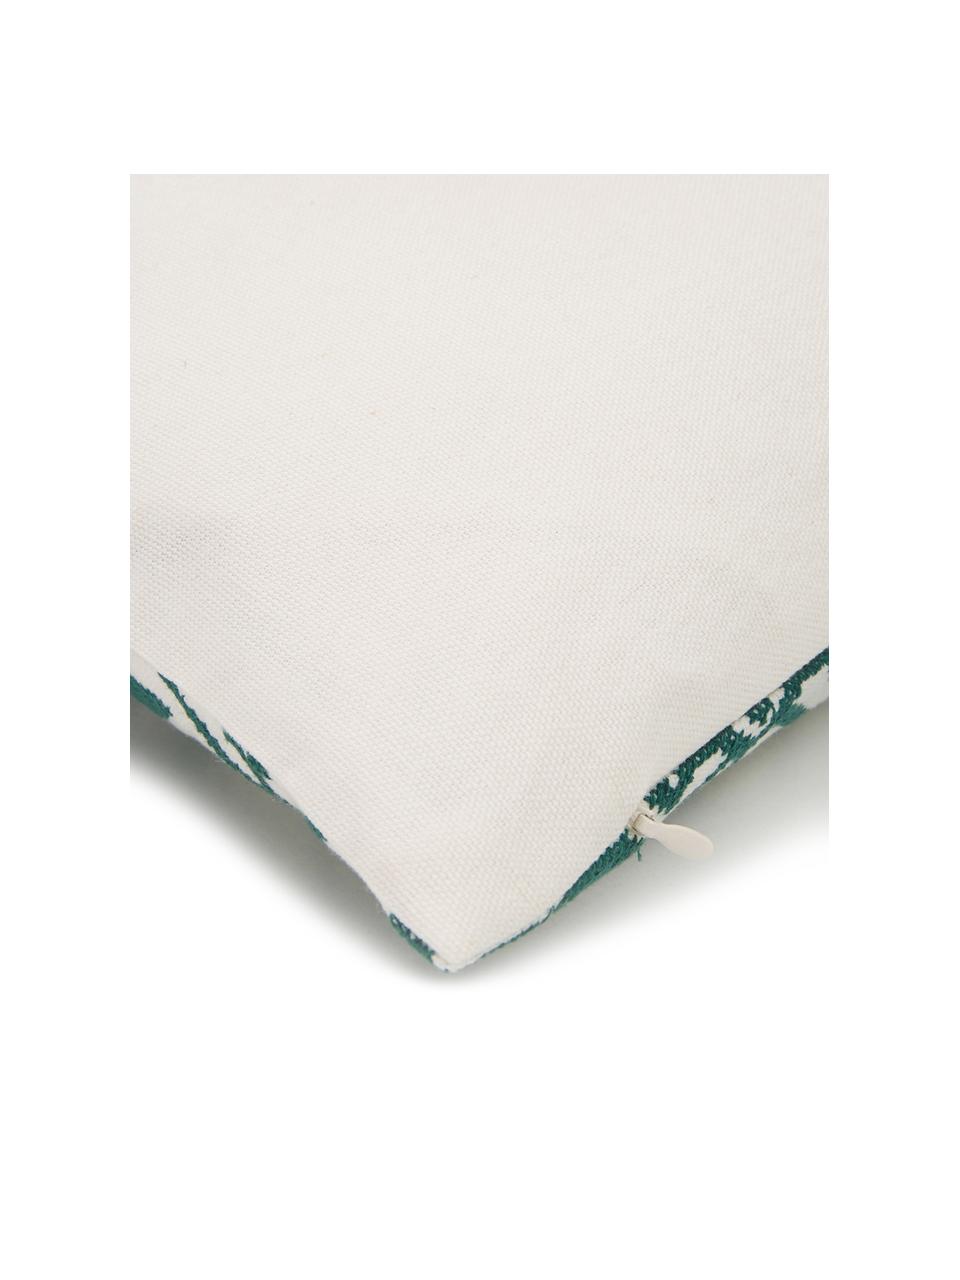 Haftowana poszewka na poduszkę Shetland, 100% bawełna, Zielony, kremowobiały, S 30 x D 50 cm